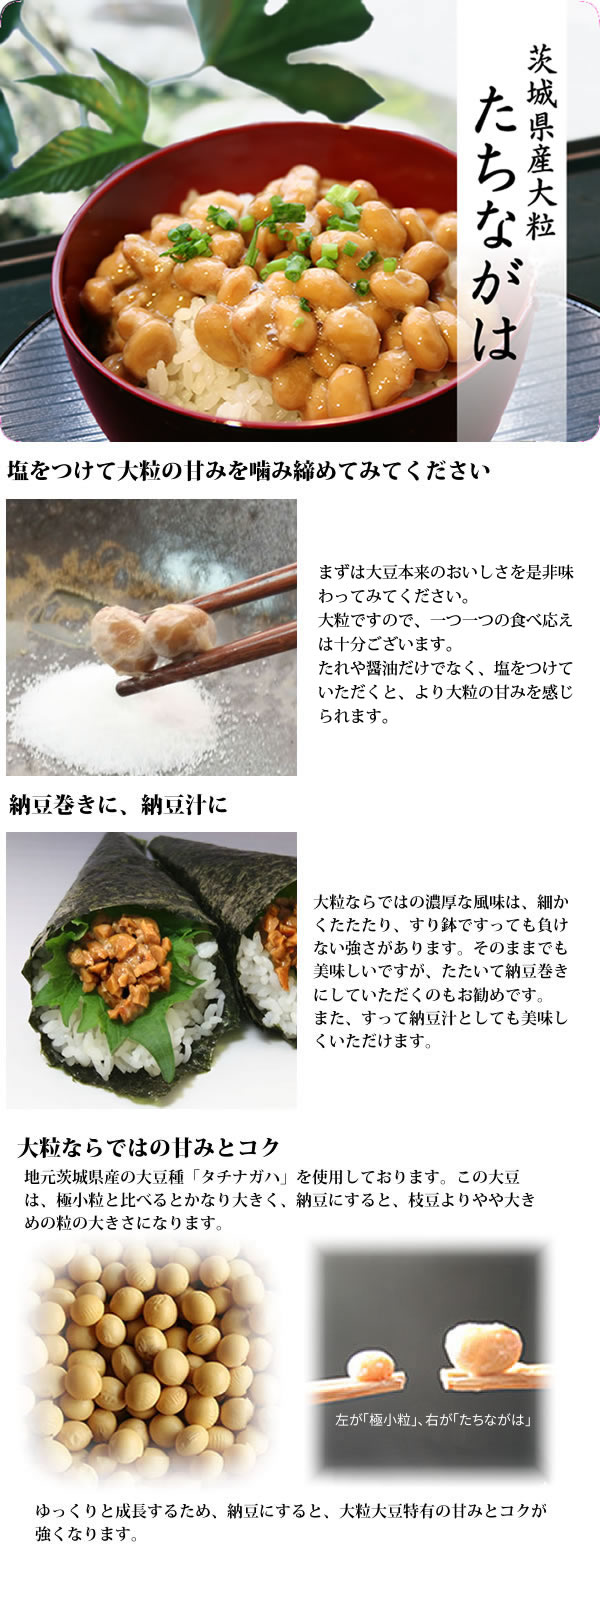 茨城県産大粒大豆たちながはの特徴について